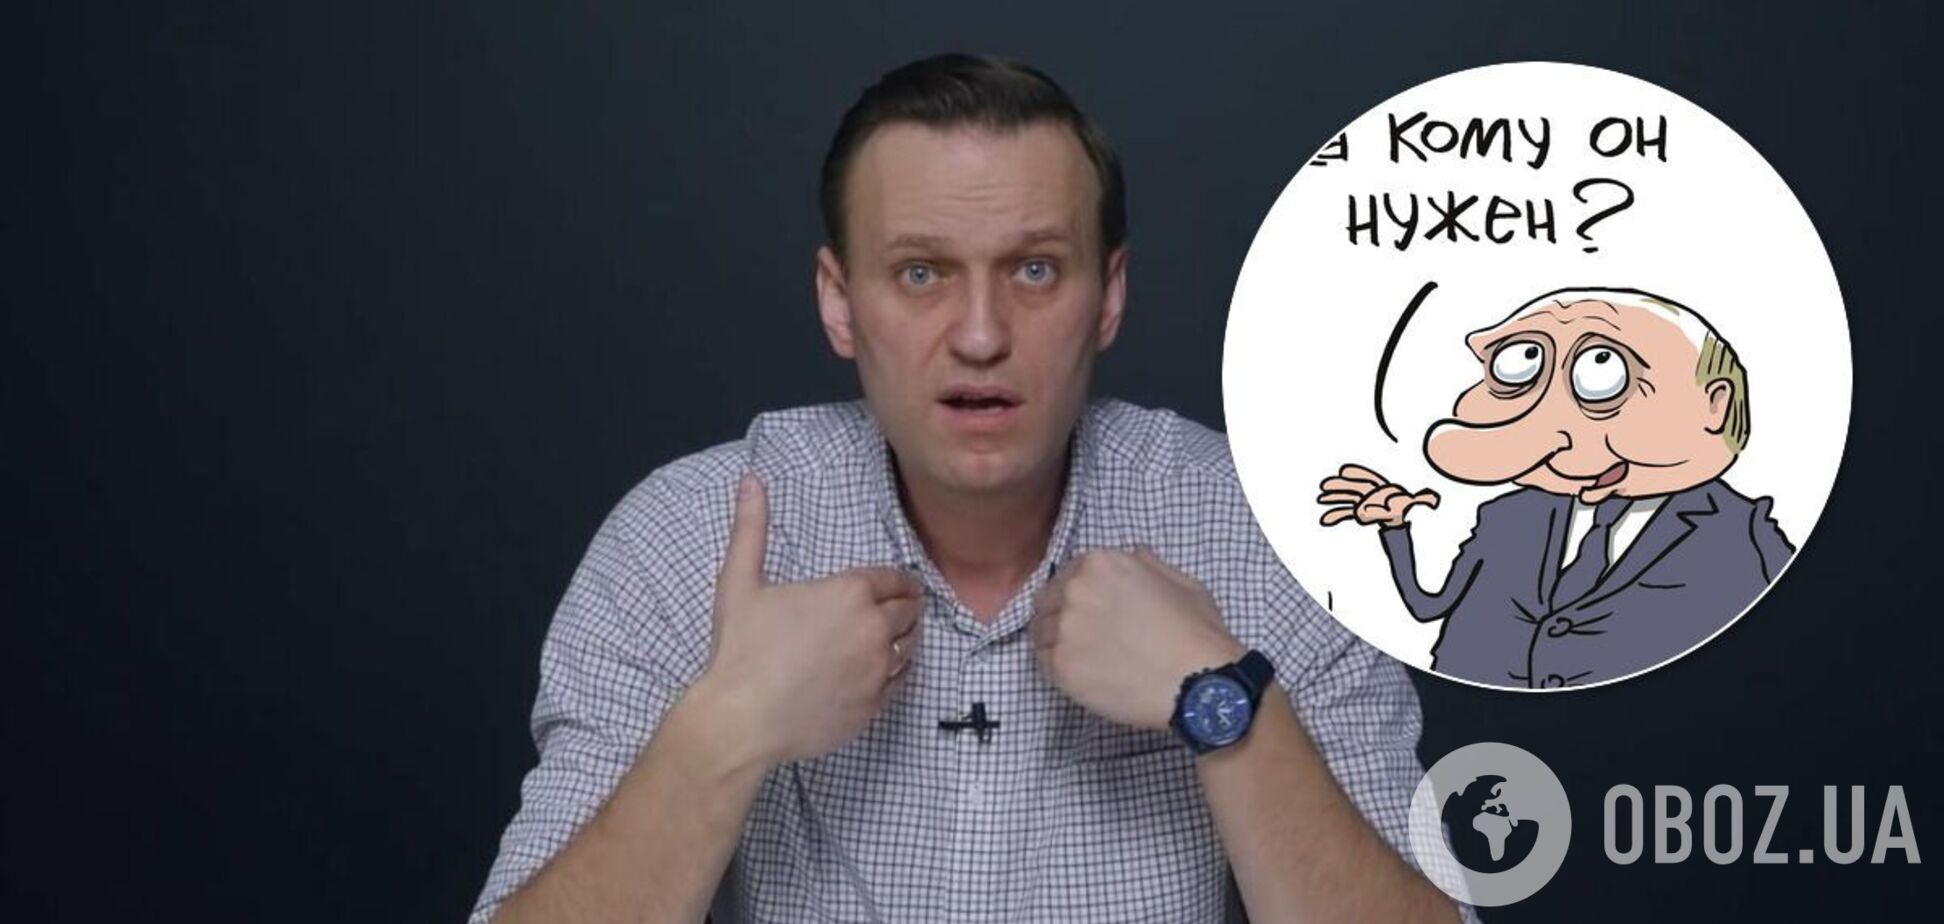 Мережа відреагувала на арешт Навального мемами з Путіним